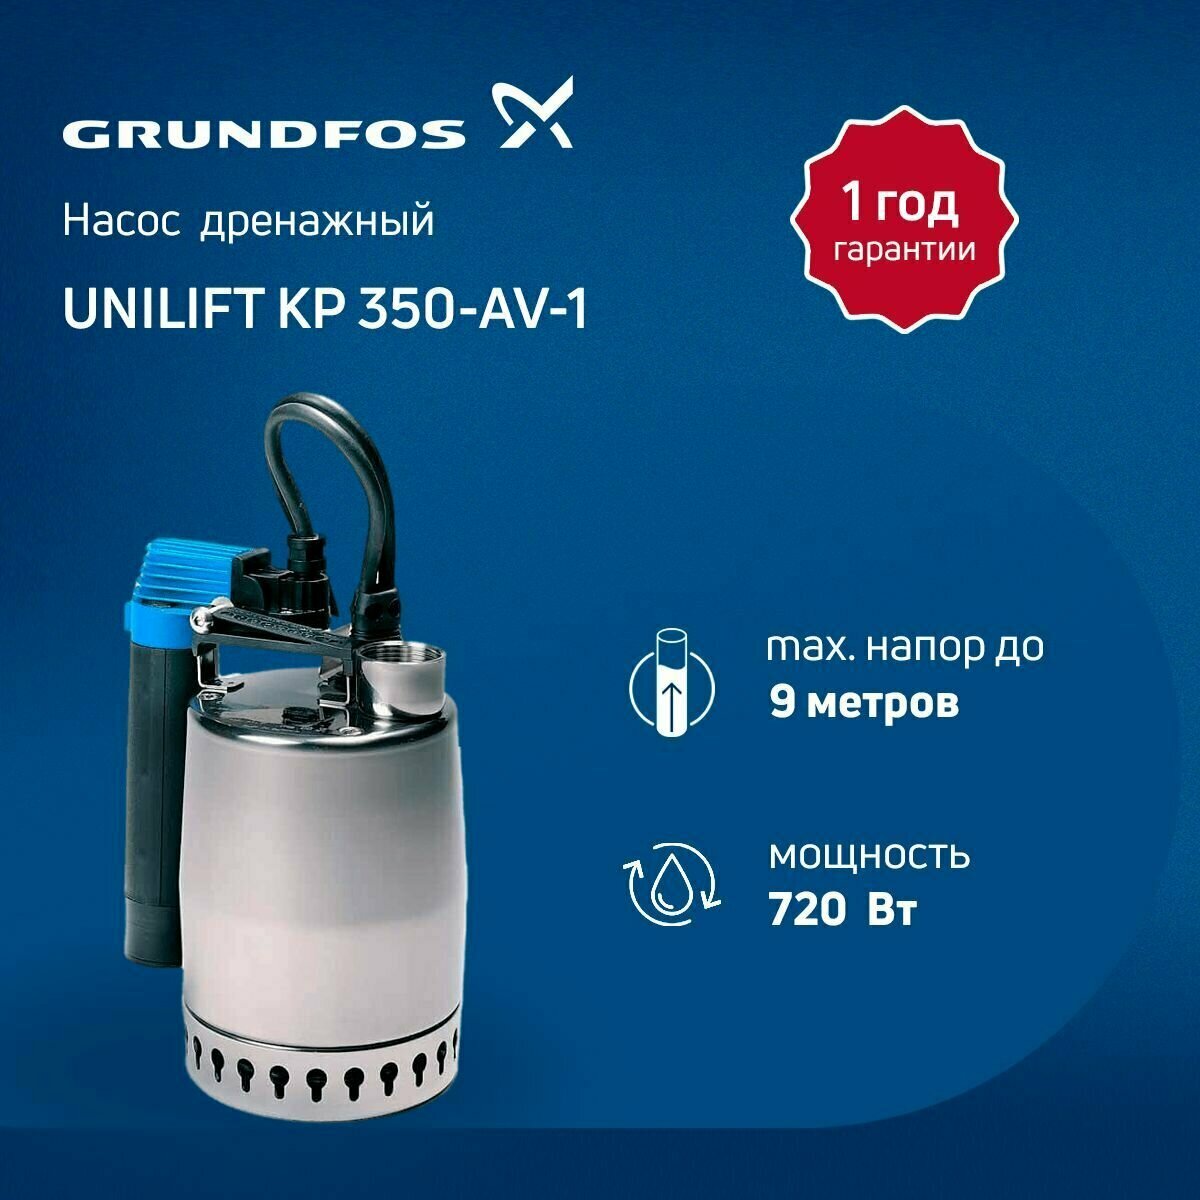 Дренажный насос Grundfos UNILIFT KP 350-AV-1 (с вертикальным контролем уровня)